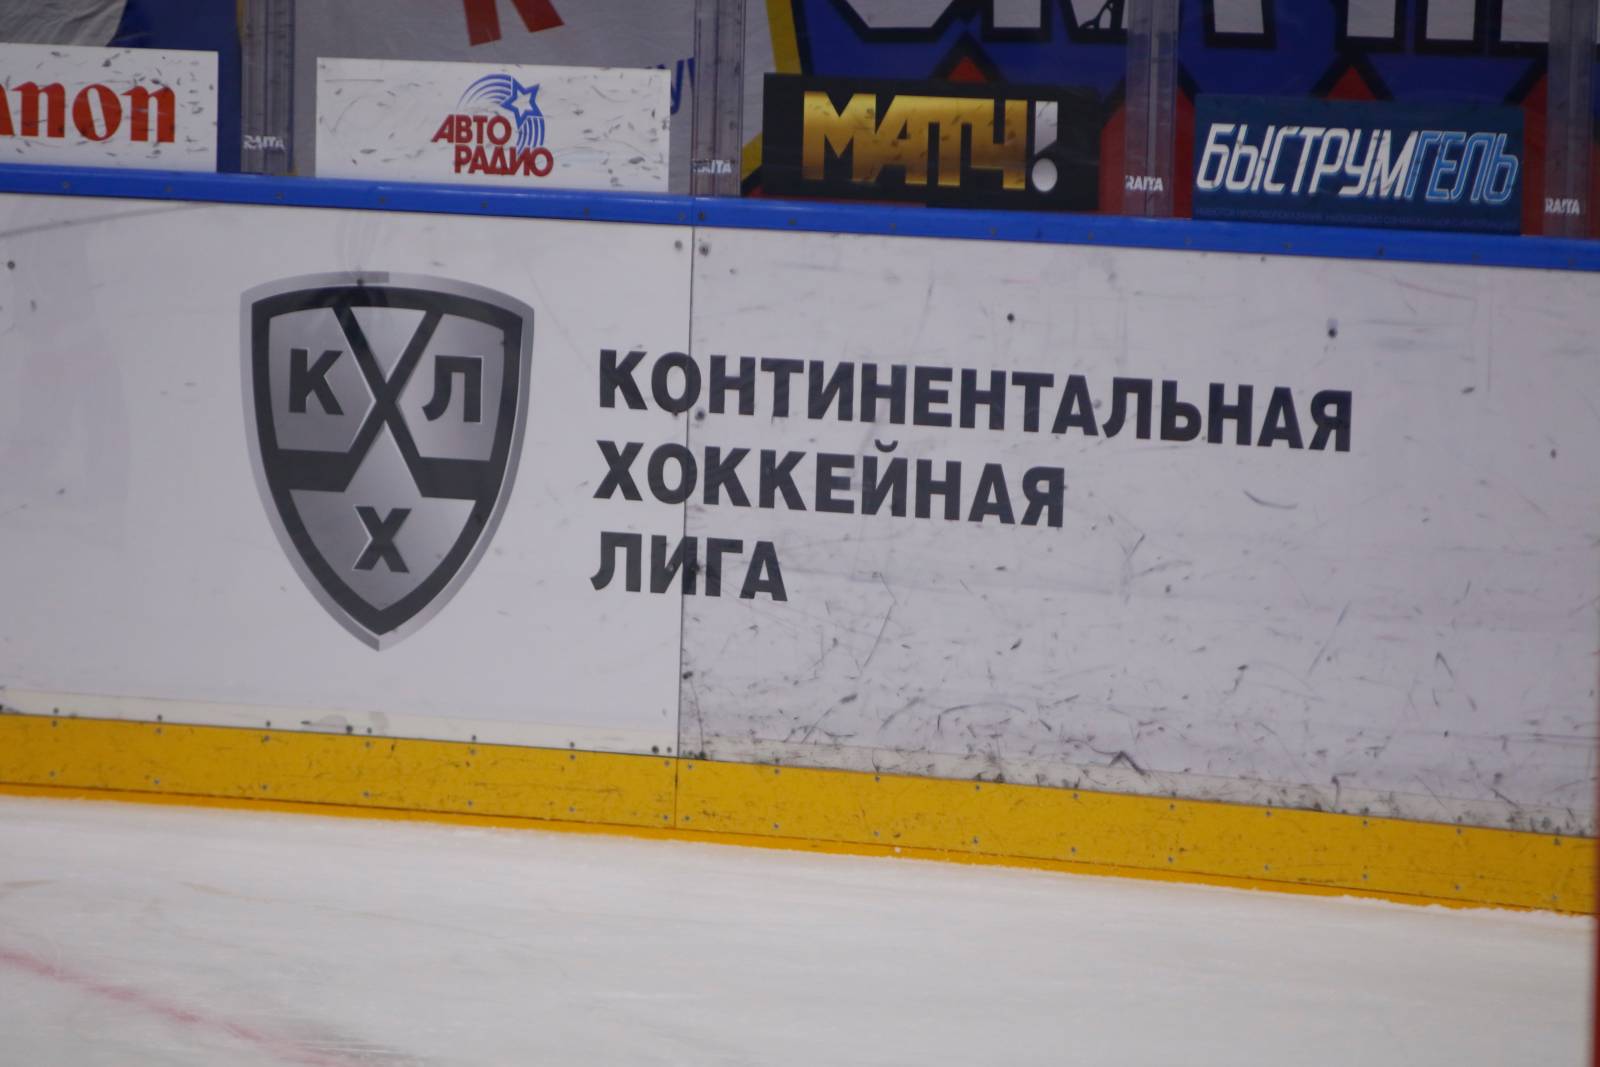 Александр Скоренов: смысл и нужда во второй белорусской команде в КХЛ есть